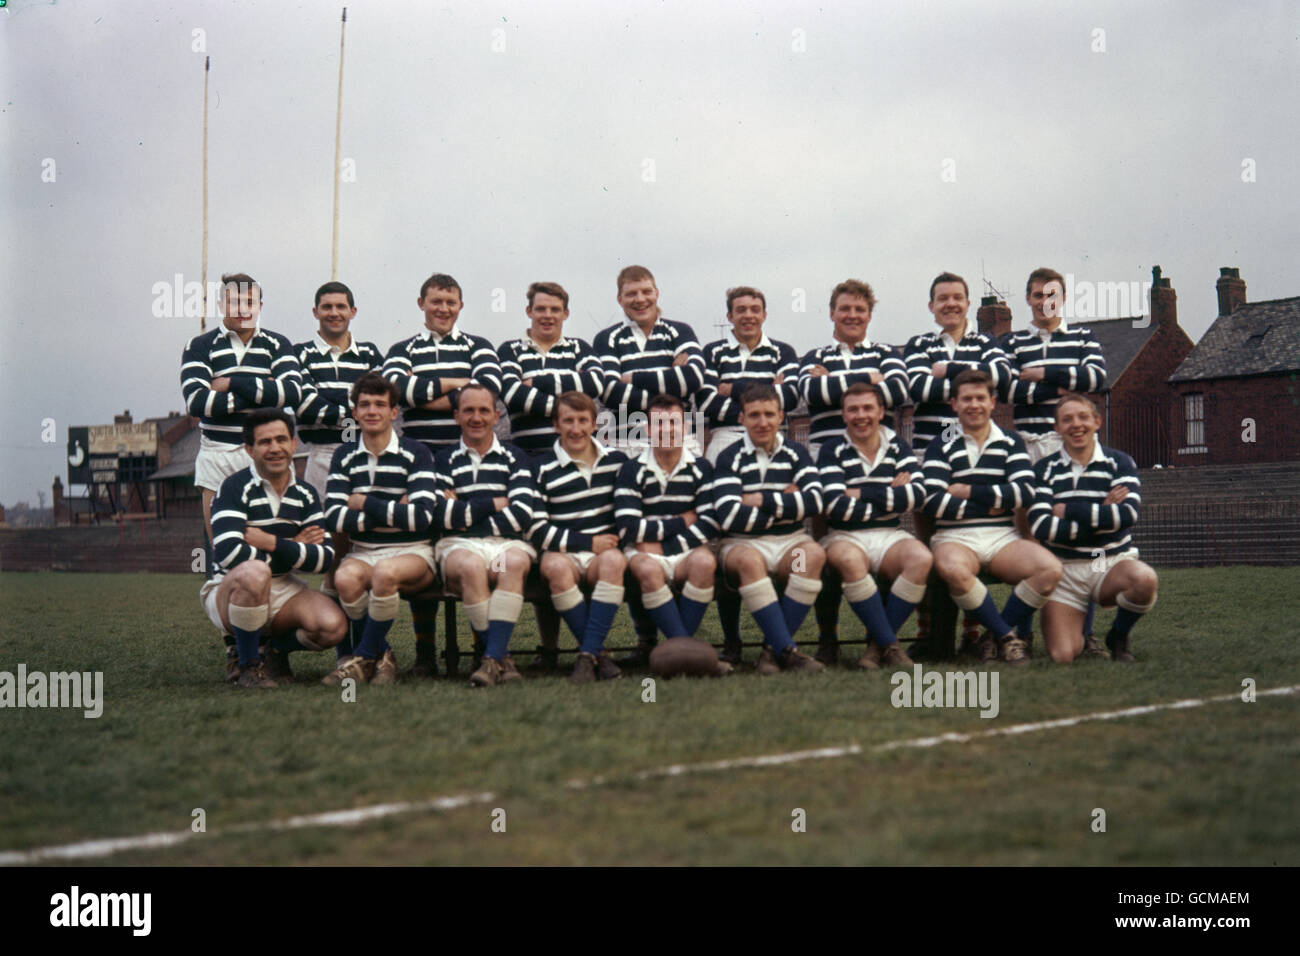 Rugby League - Featherstone Rovers - Photocall.Groupe d'équipe Featherstone Rovers, y compris Carl Dooler (5e rangée avant à partir de la gauche) Banque D'Images